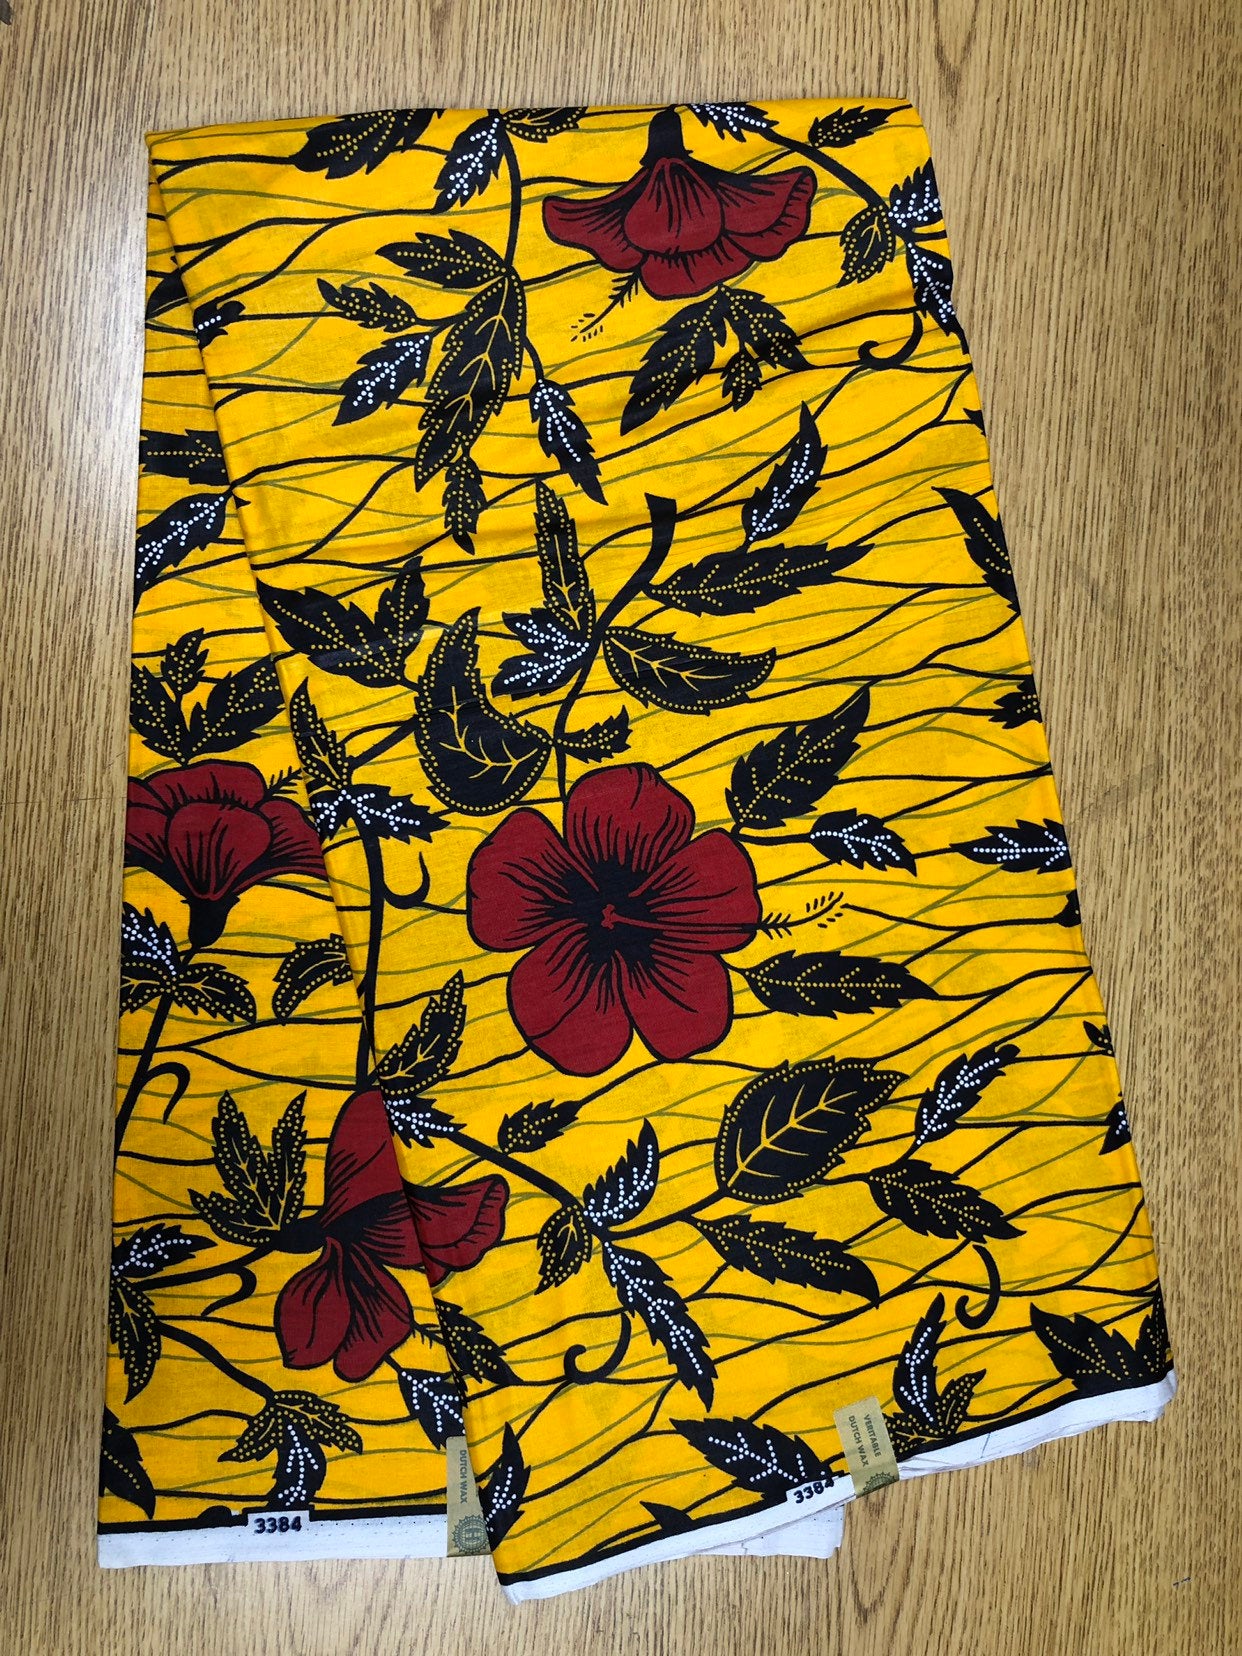 Per Yard Red Yellow Black White Hibiscus Topizo Flower Ankara African Print  Fabric 1 Yard